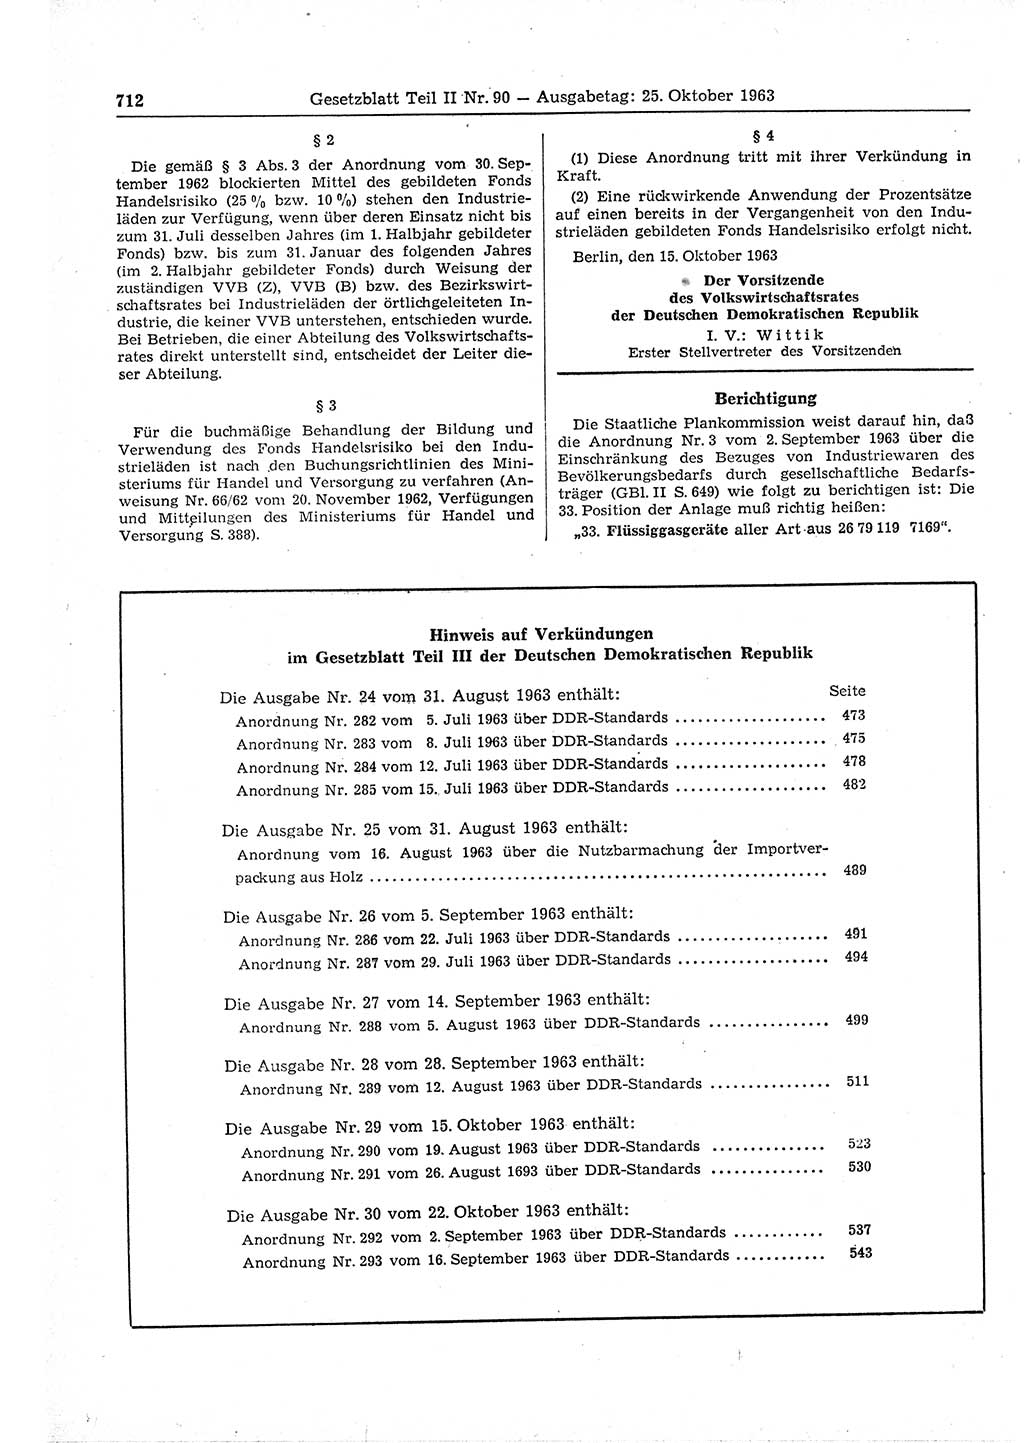 Gesetzblatt (GBl.) der Deutschen Demokratischen Republik (DDR) Teil ⅠⅠ 1963, Seite 712 (GBl. DDR ⅠⅠ 1963, S. 712)